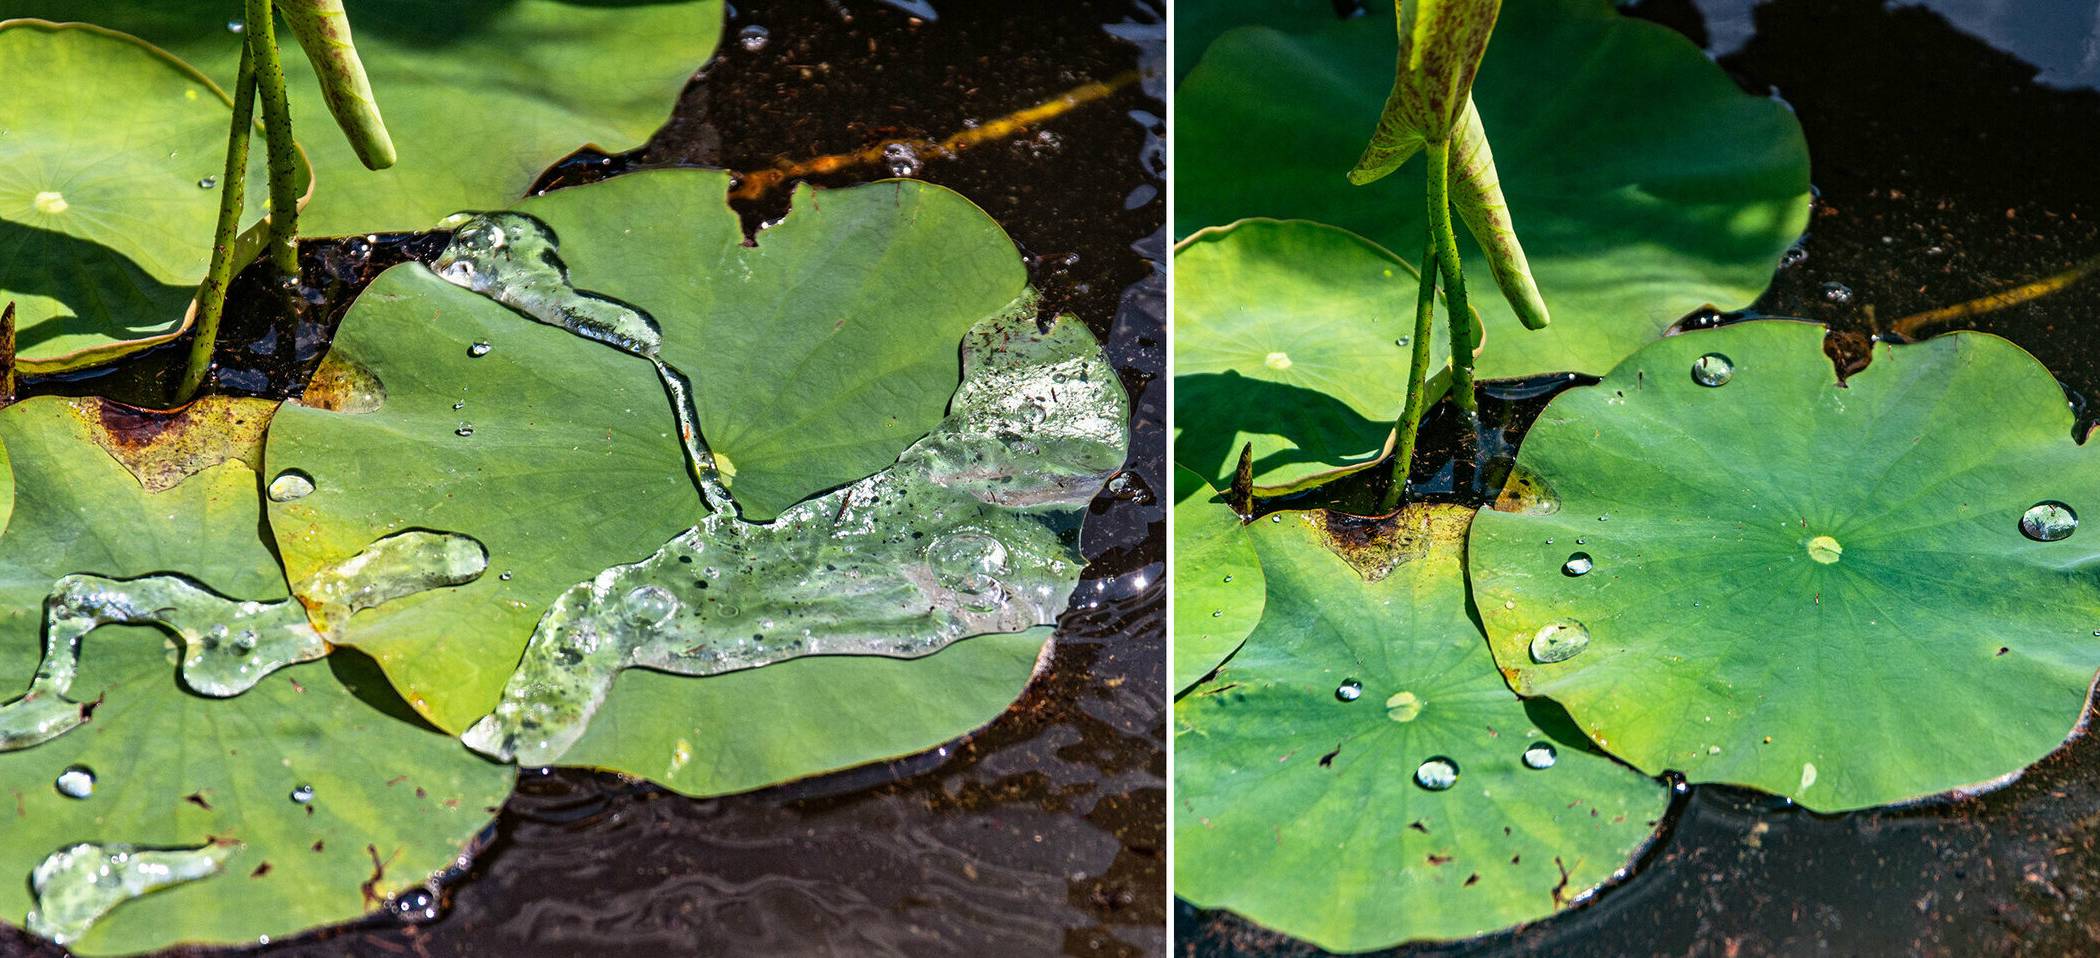  Die Blätter der Lotosblume zeigen einen Effekt, der auch technisch genutzt wird: Durch eine Mikrostrukturierung der Blattoberfläche kann Wasser darauf nicht haften, es rollt einfach ab. Auch Kohlblätter zeigen diesen „Lotoseffekt“. 